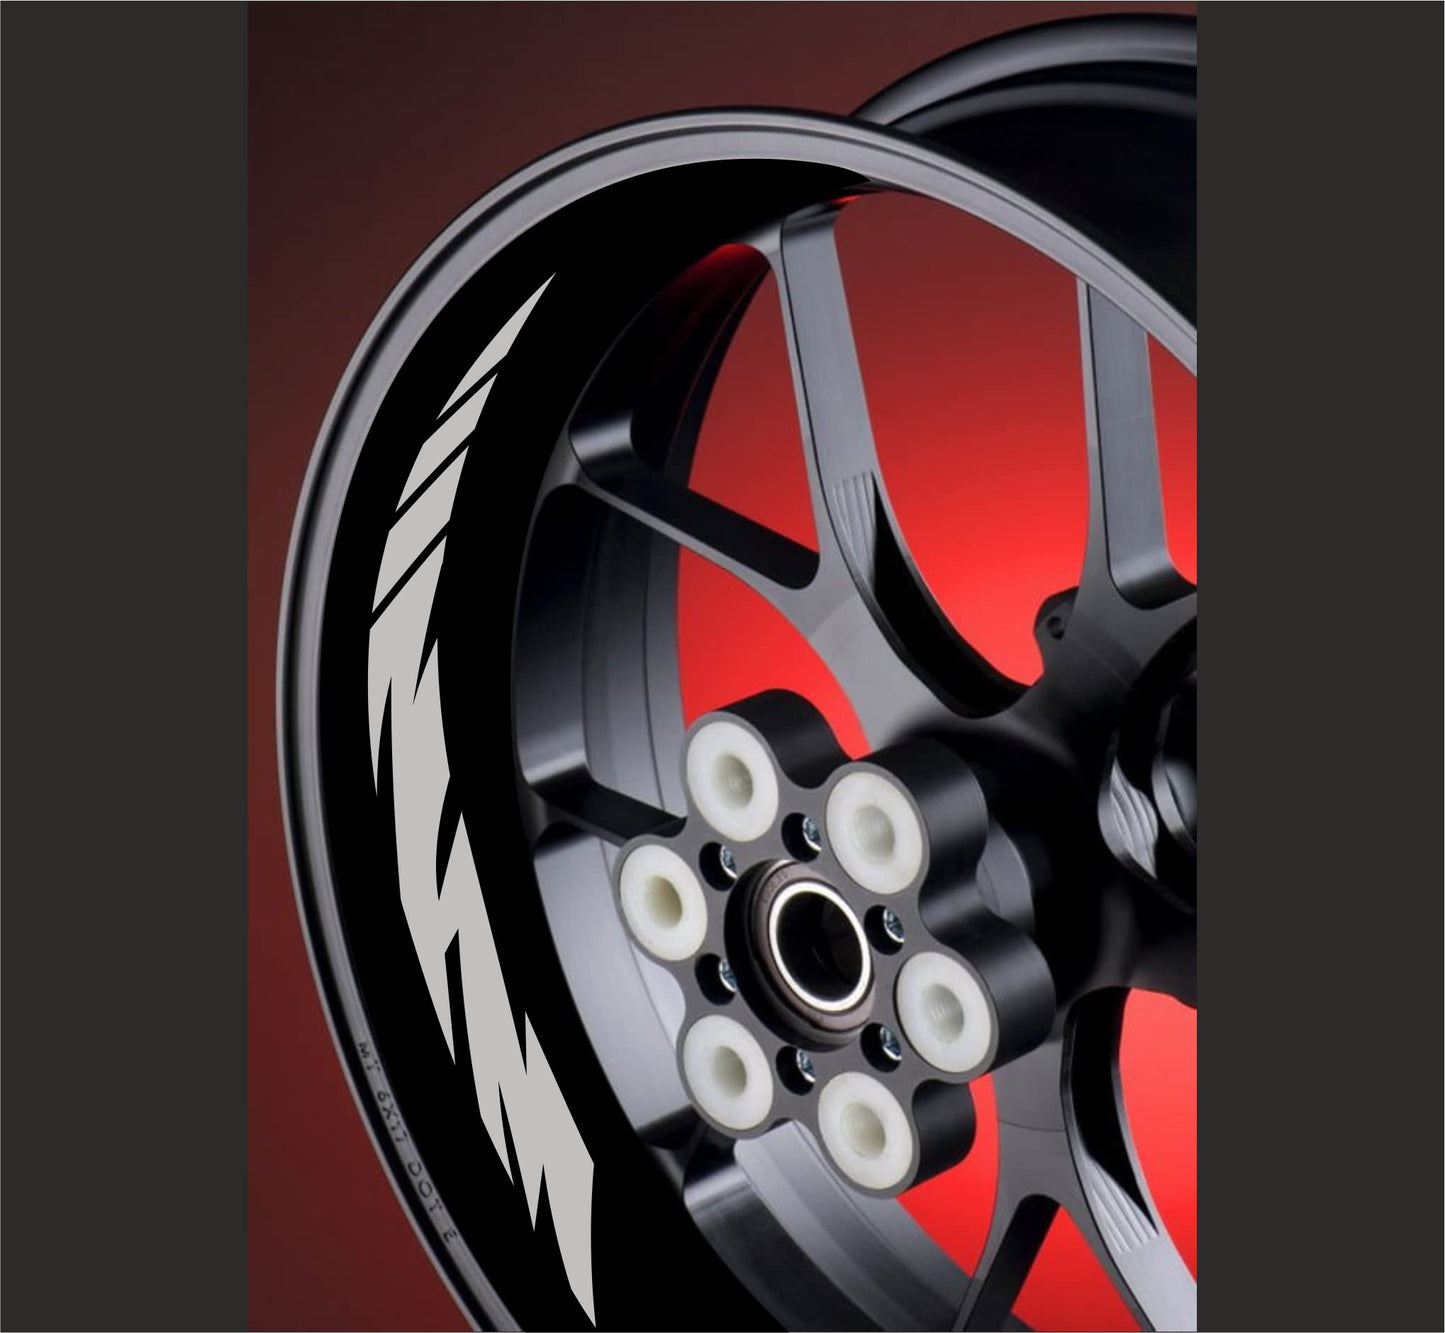 DualColorStampe Adesivi interno cerchi moto 17 POLLICI Compatibili con Ducati Suzuki Kawasaki Honda Triumph cerchi cerchioni gomme strisce COD.D0032 a €9.99 solo da DualColorStampe